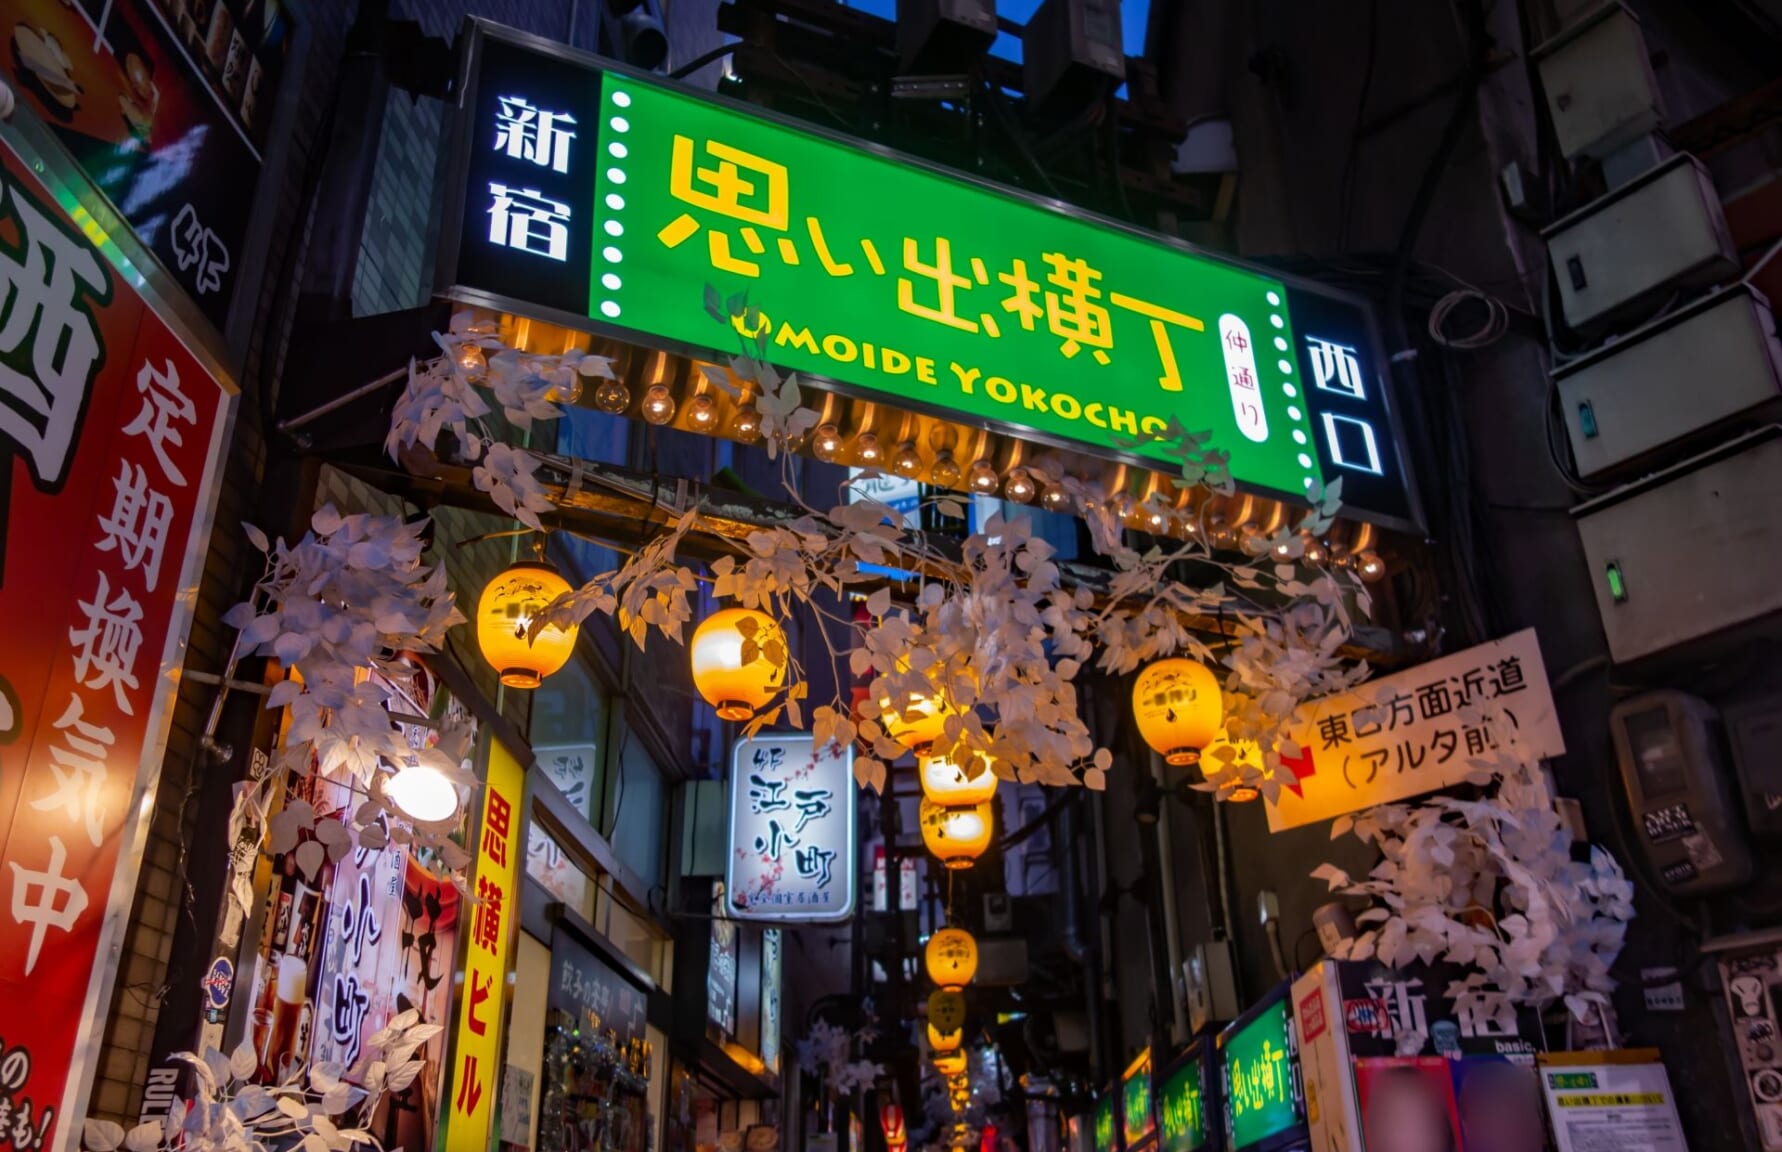 Omoide Yokocho Alley